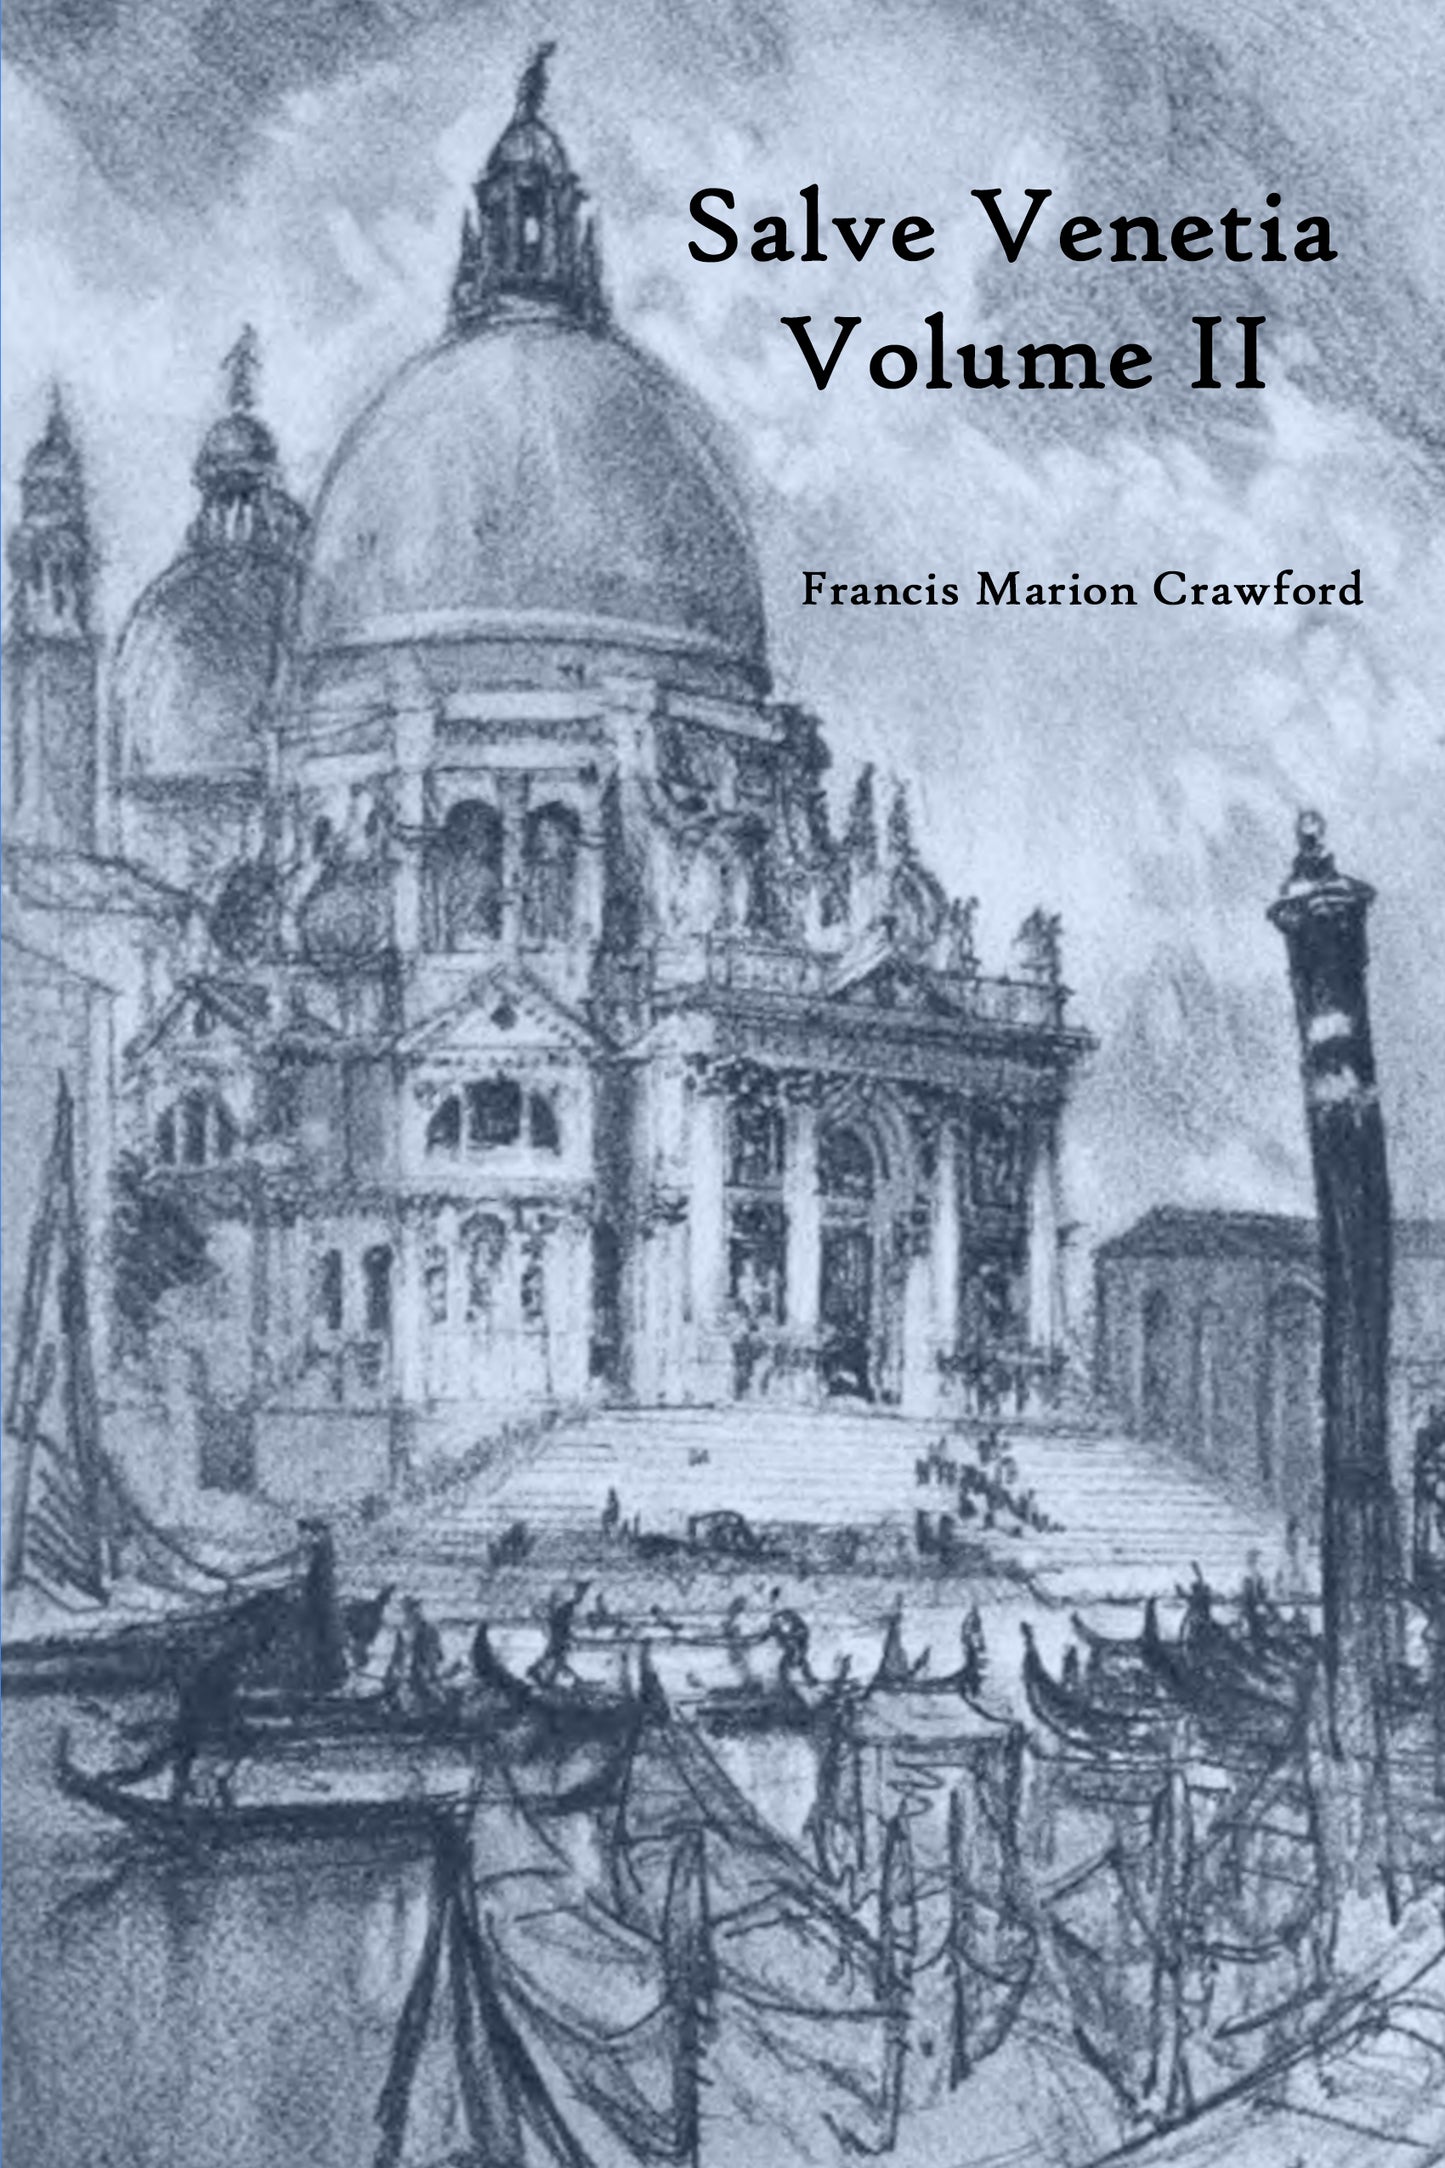 Salve Venetia Volume II